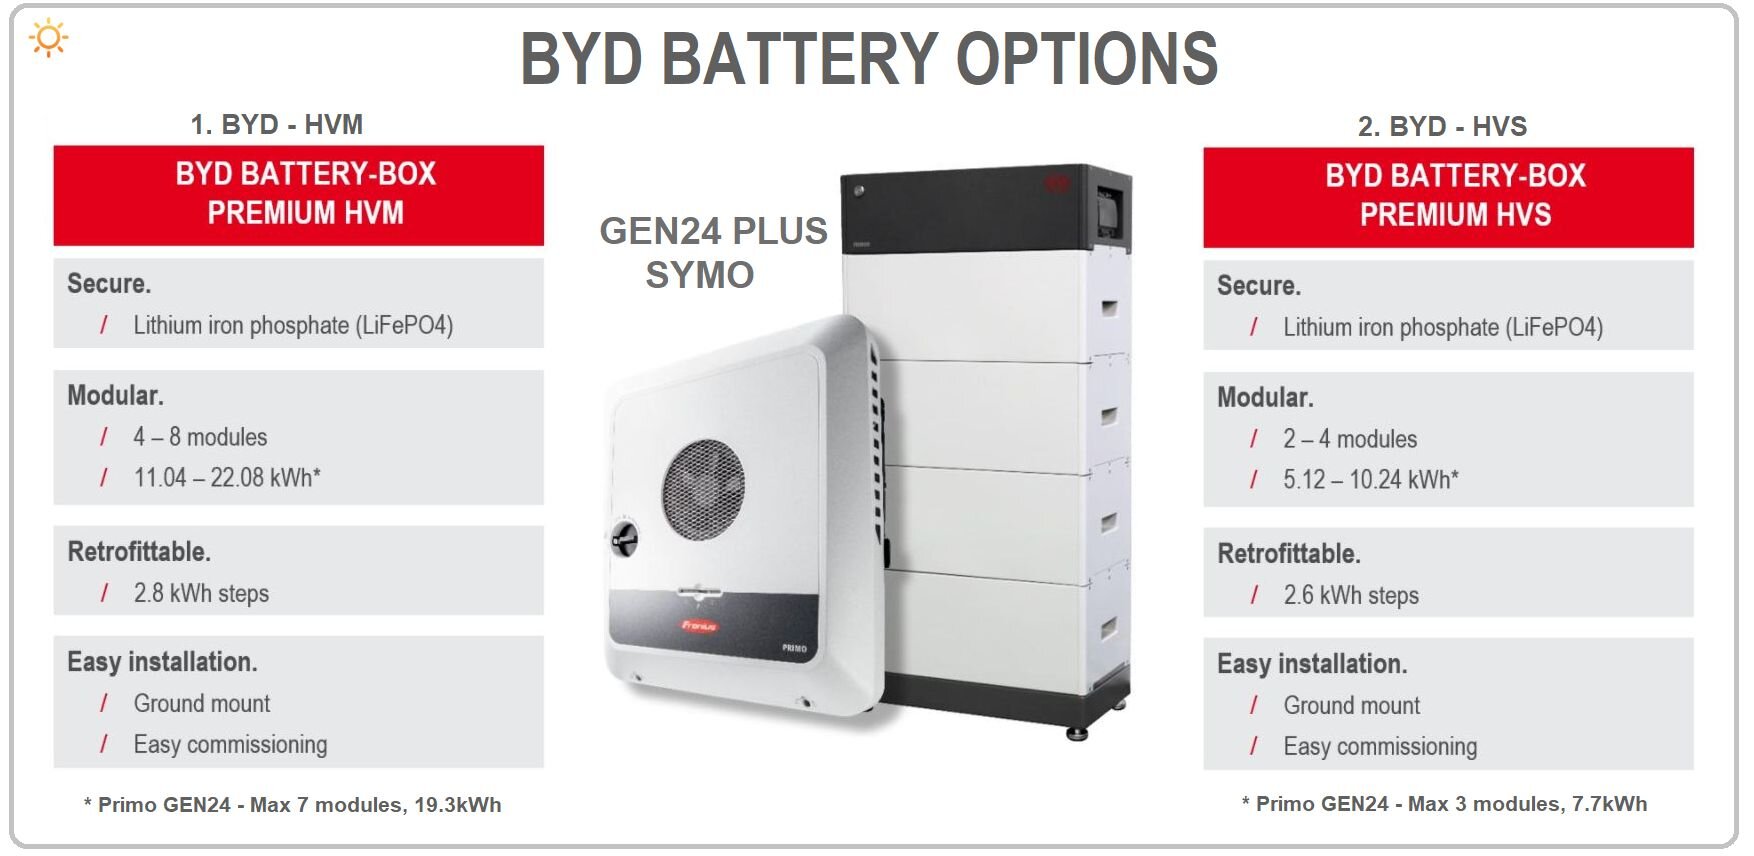 GEN24目前只兼容比亚迪的HVM和HVS电池。